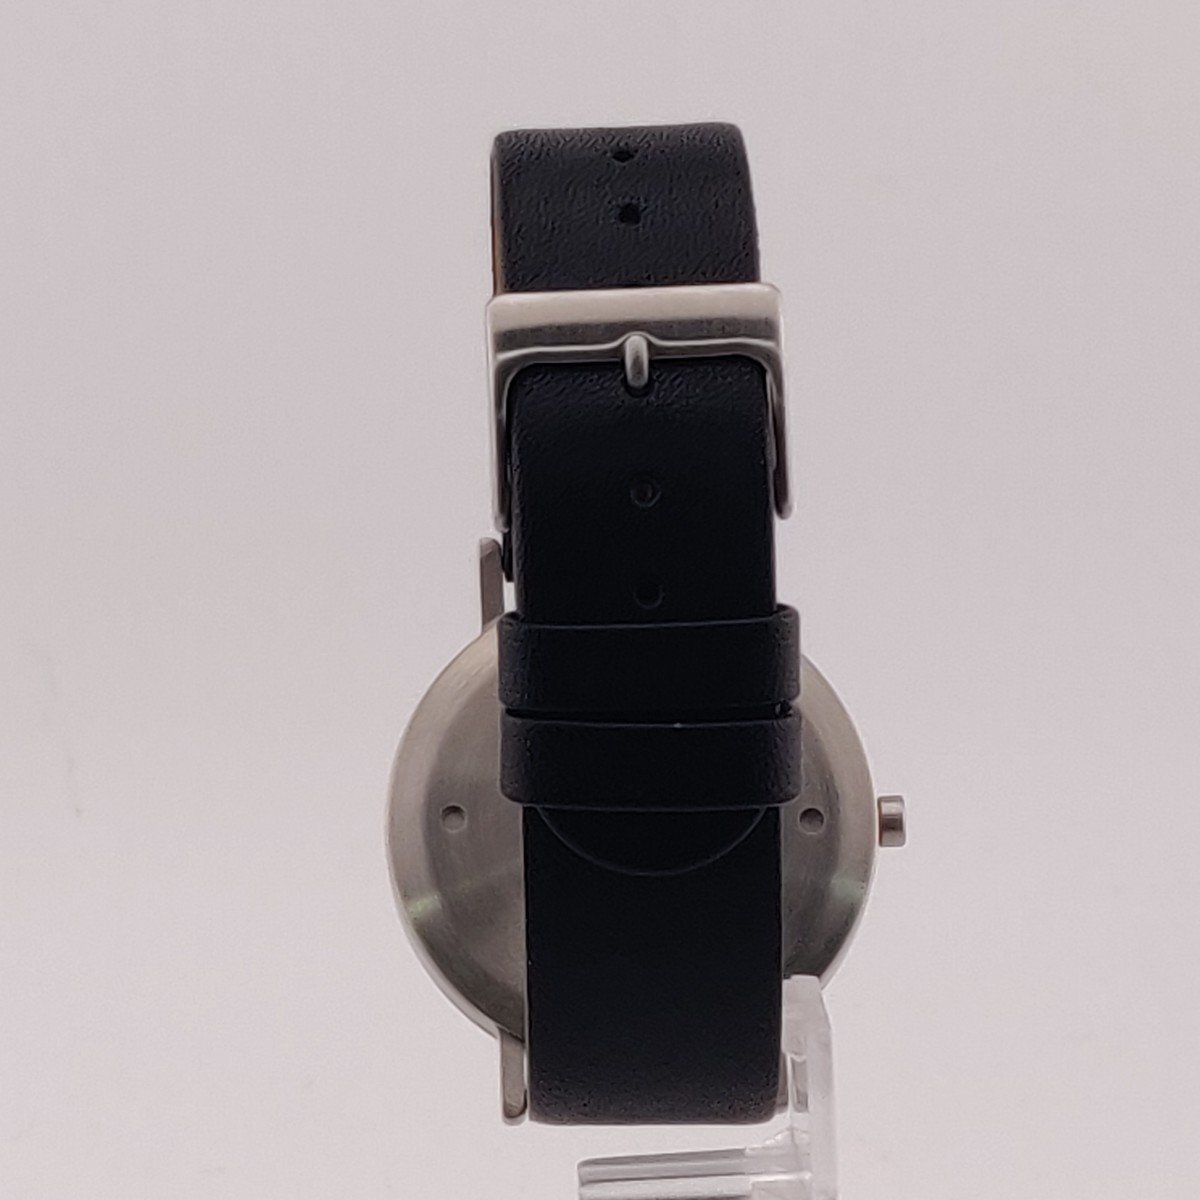 3532@【訳あり】[ストック] 腕時計 STW020008 アナログ ステンレススチール レザー クォーツ 5気圧防水 メンズ ブラック【0430_※レザー部分にシワがあります。